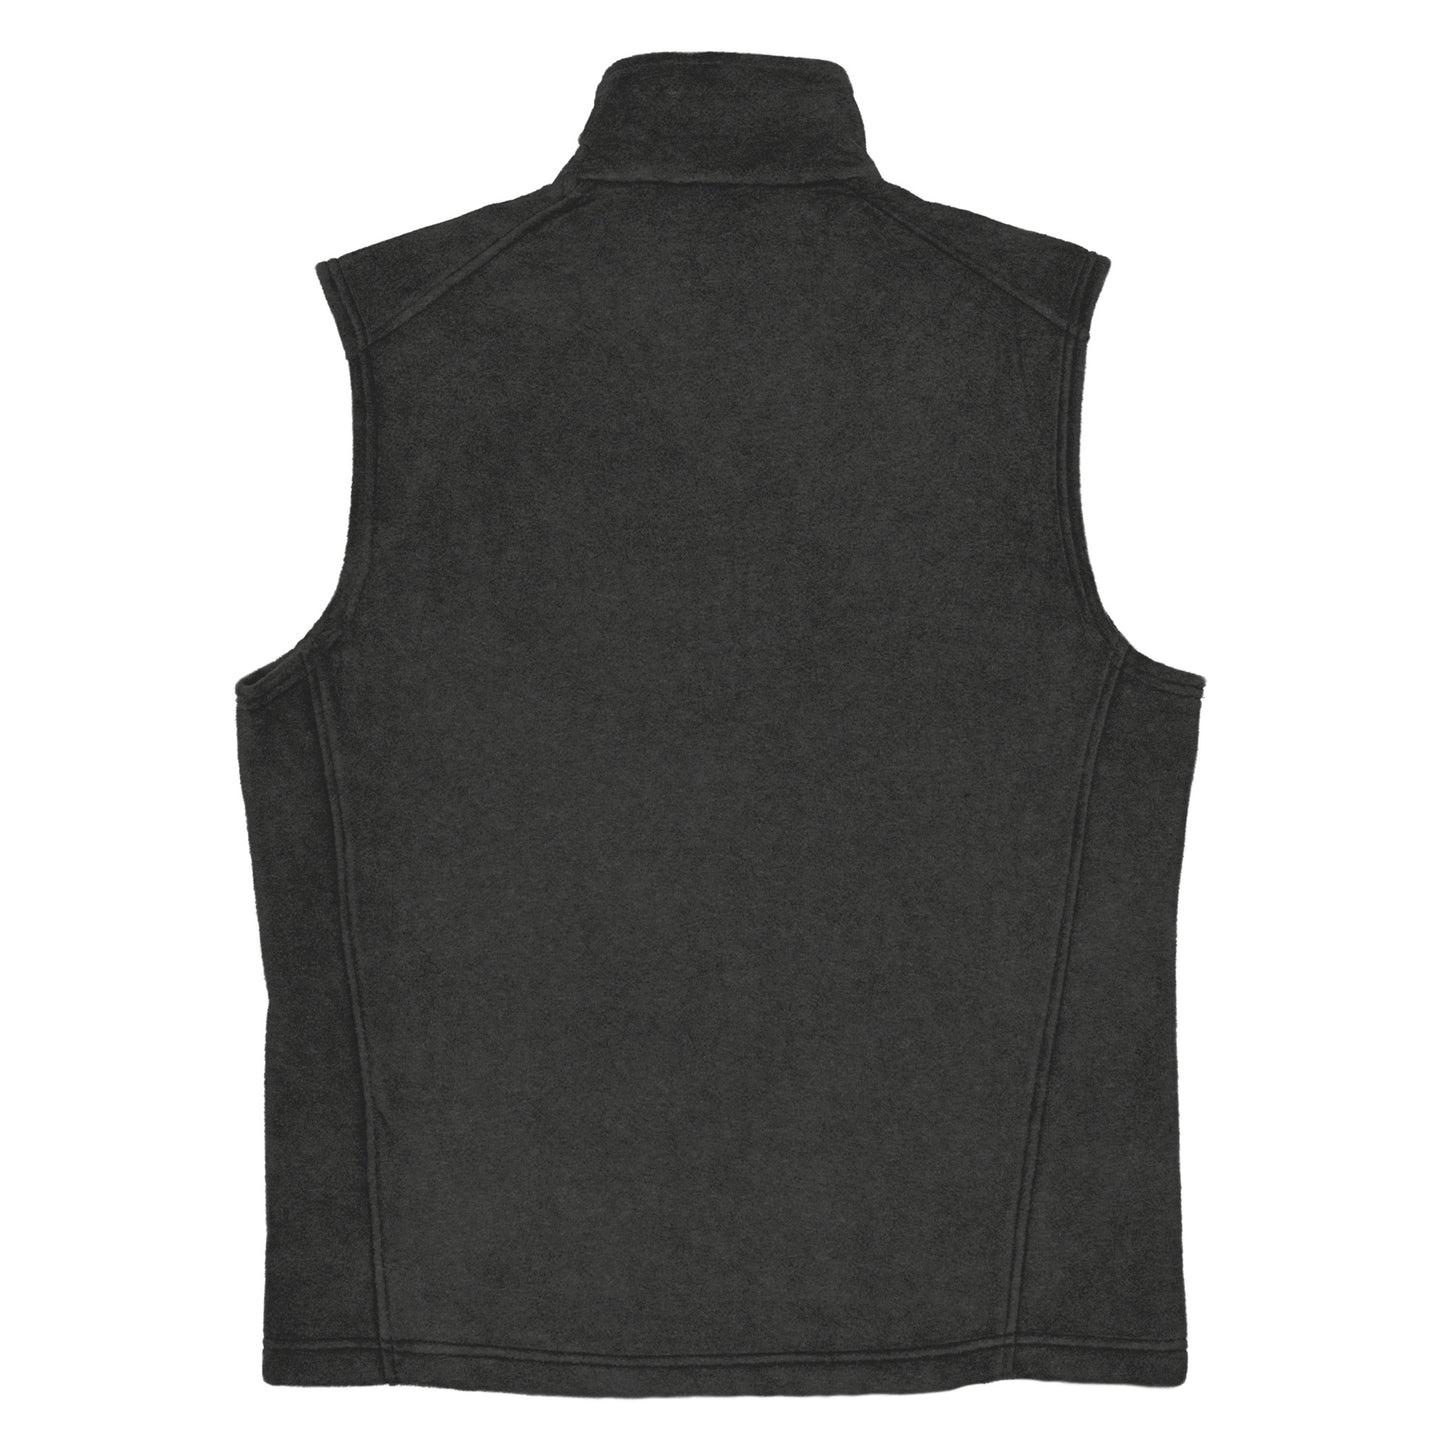 Men’s Columbia fleece vest (US Only)